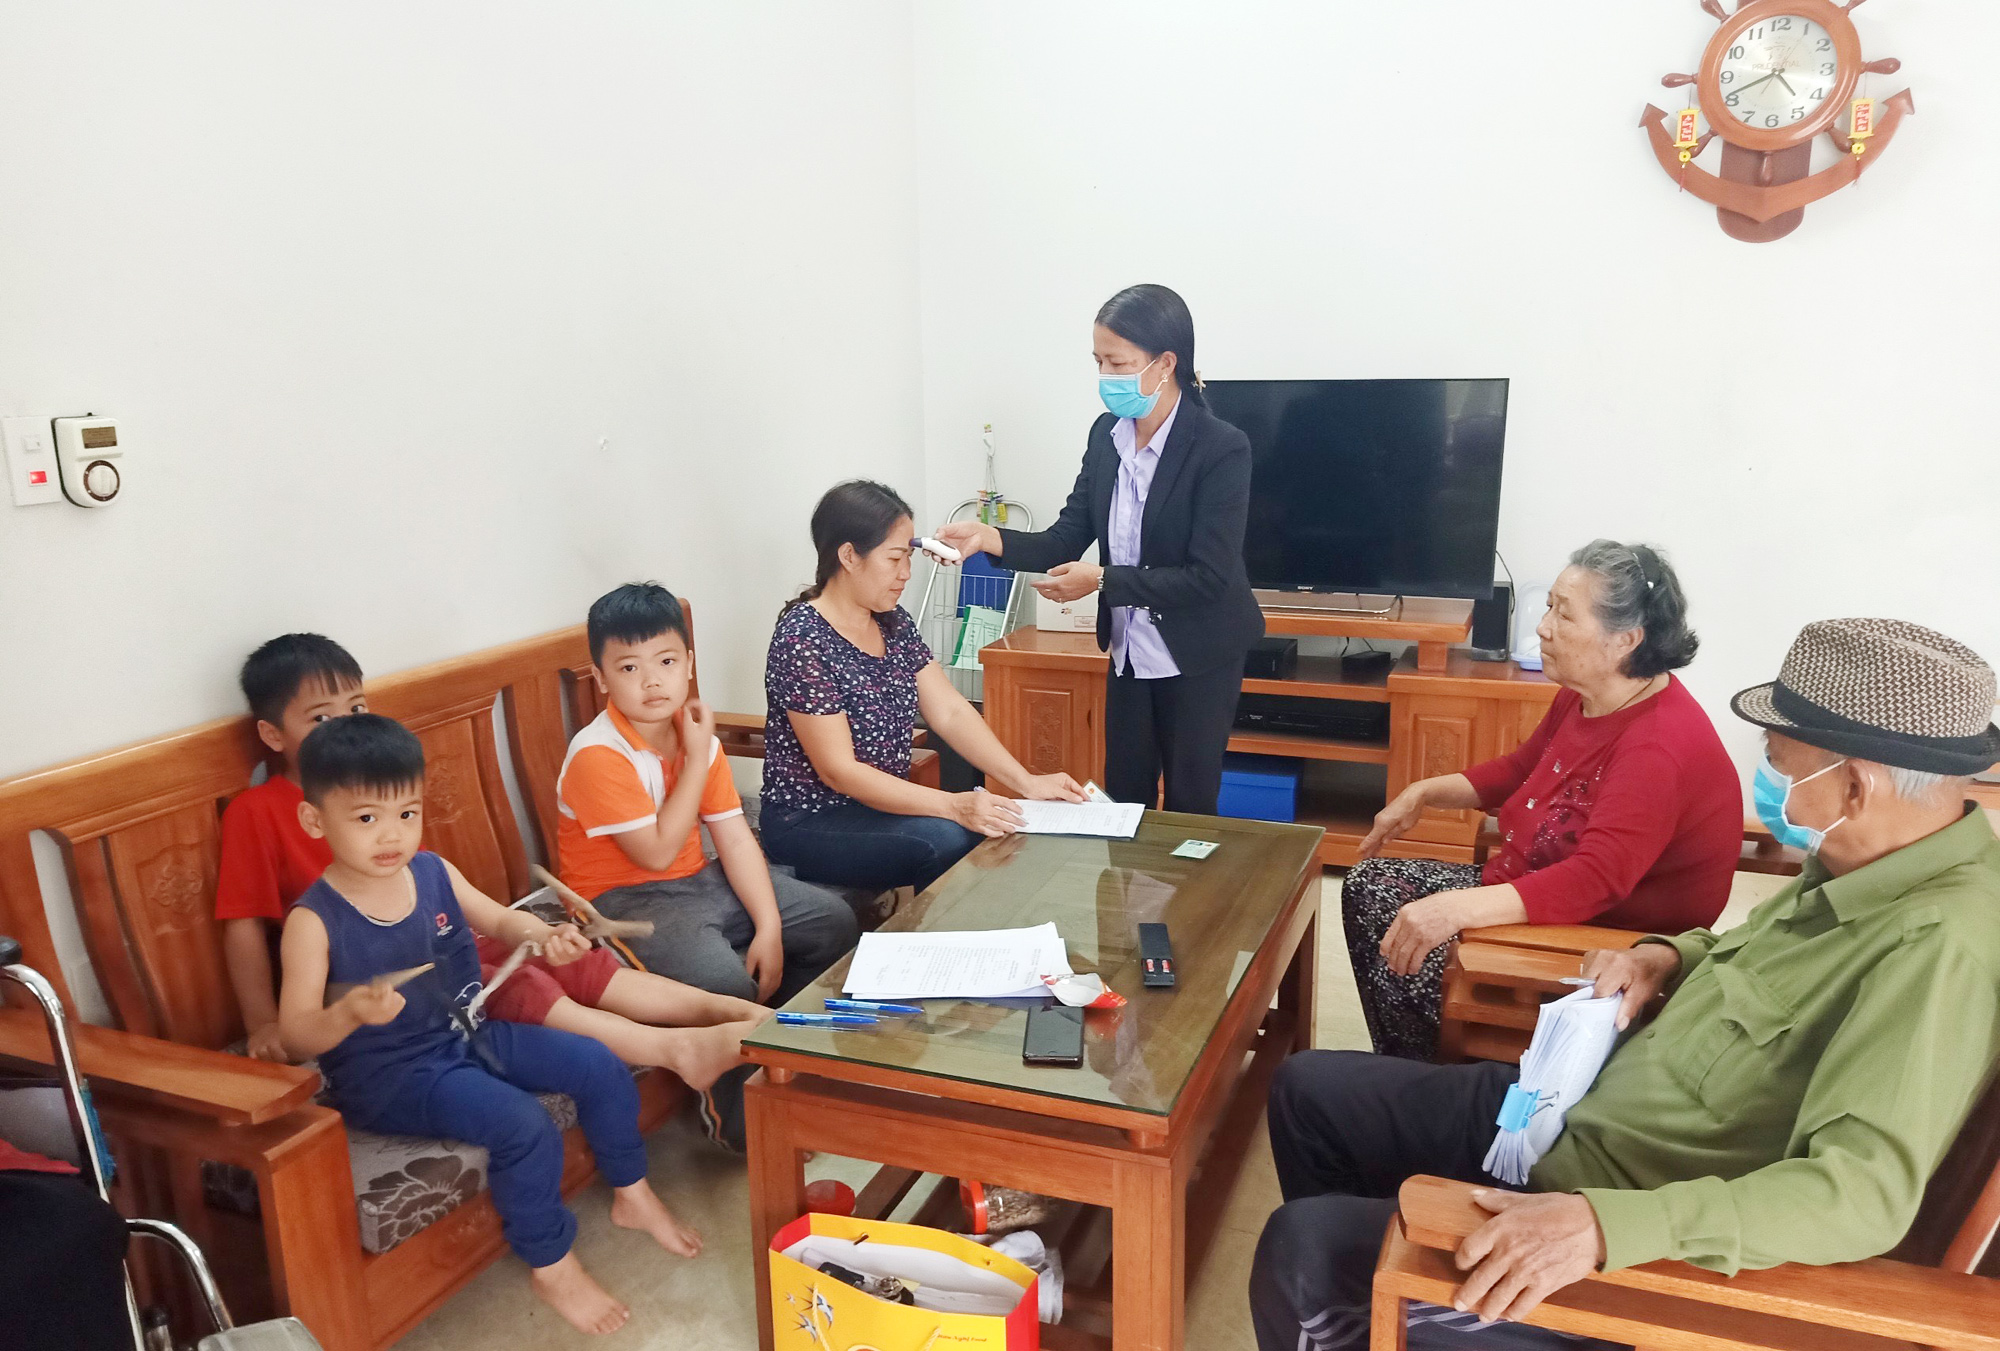 Đồng chí Ngô Thị Ánh, Bí thư Chi bộ, trưởng khu 6 đo thân nhiệt cho hộ gia đình ông La Văn Hơn trú tại địa bàn.